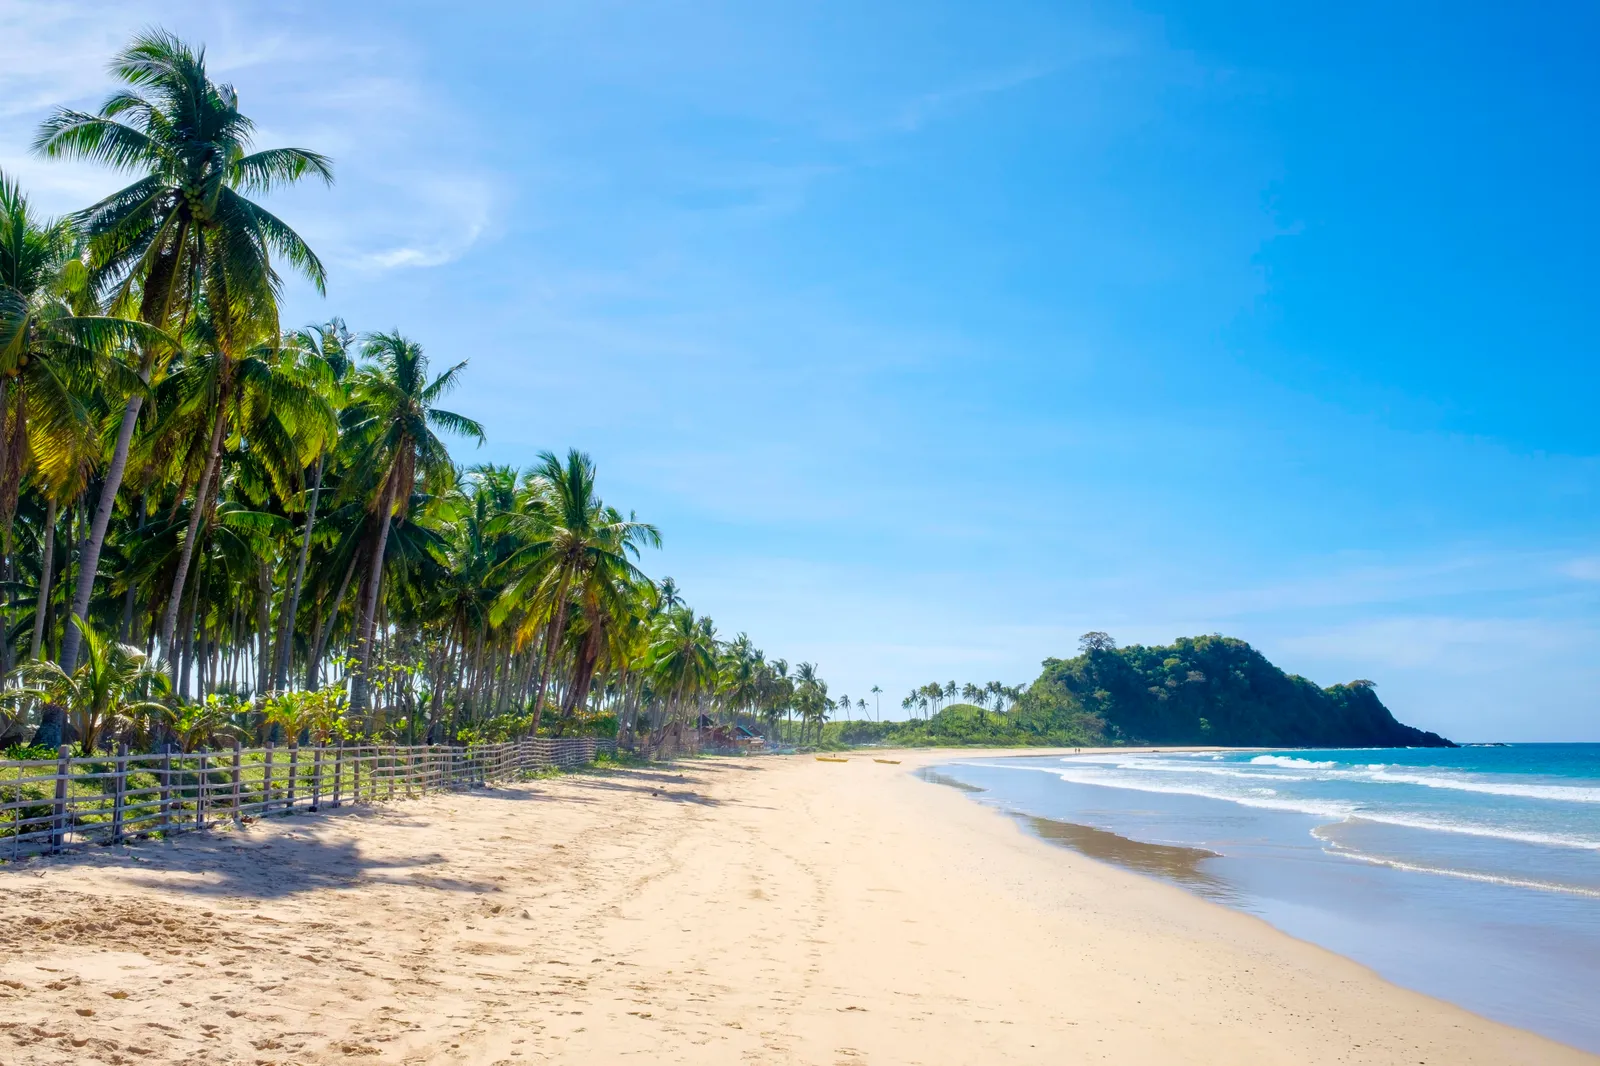 Bãi biển Nacpan, El Nido, Philippines Nằm trên đảo Palawan, Bãi biển Nacpan là một dải bờ biển hẻo lánh ở El Nido, chỉ cách Thác nước Nagkalit-kalit một đoạn ngắn. Bãi biển nhiệt đới nổi tiếng với cát màu kem và vùng nước nông trong vắt khiến việc chèo thuyền kayak trở thành một trải nghiệm tuyệt vời.